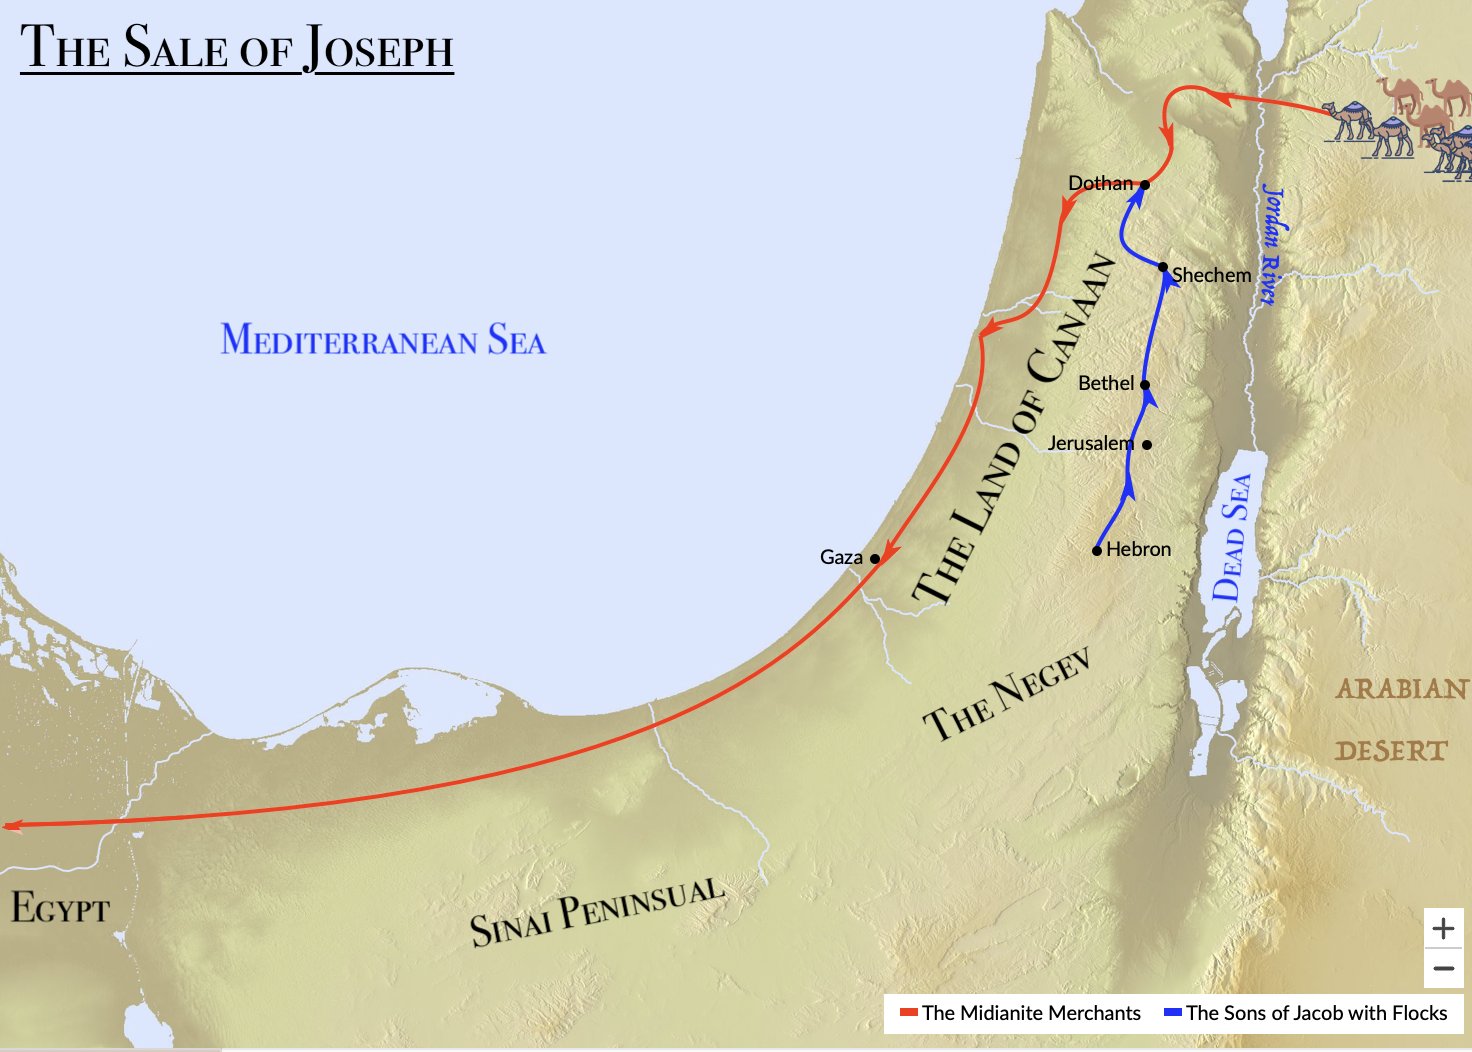 The Midianite Merchants purchase Joseph on their way to Egypt.